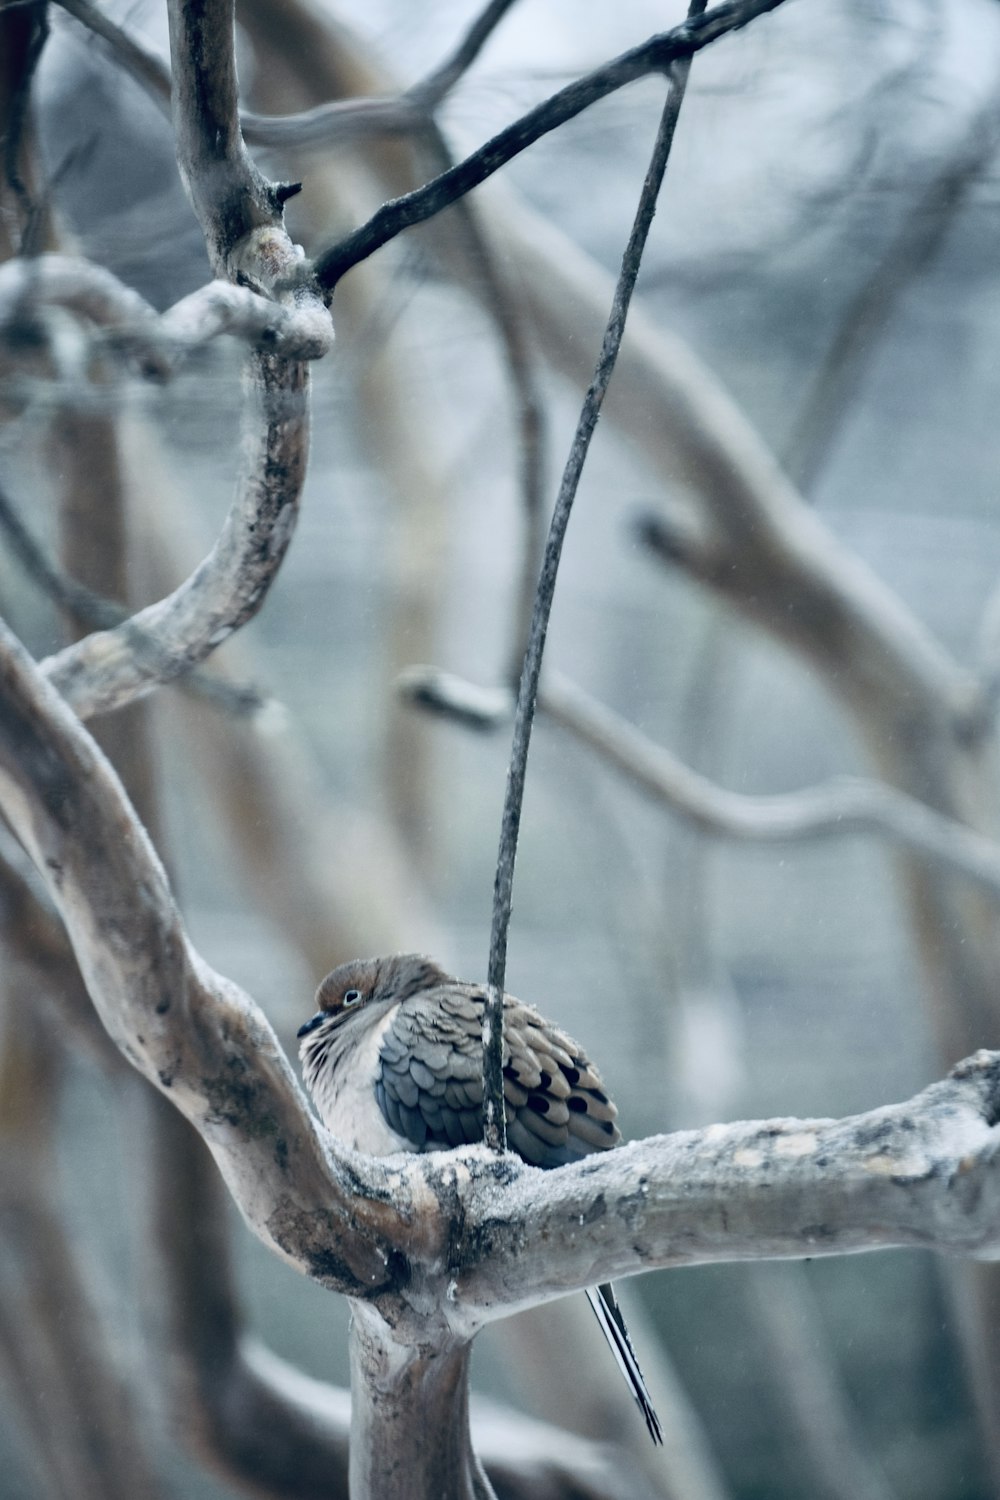 un petit oiseau perché sur une branche d’arbre